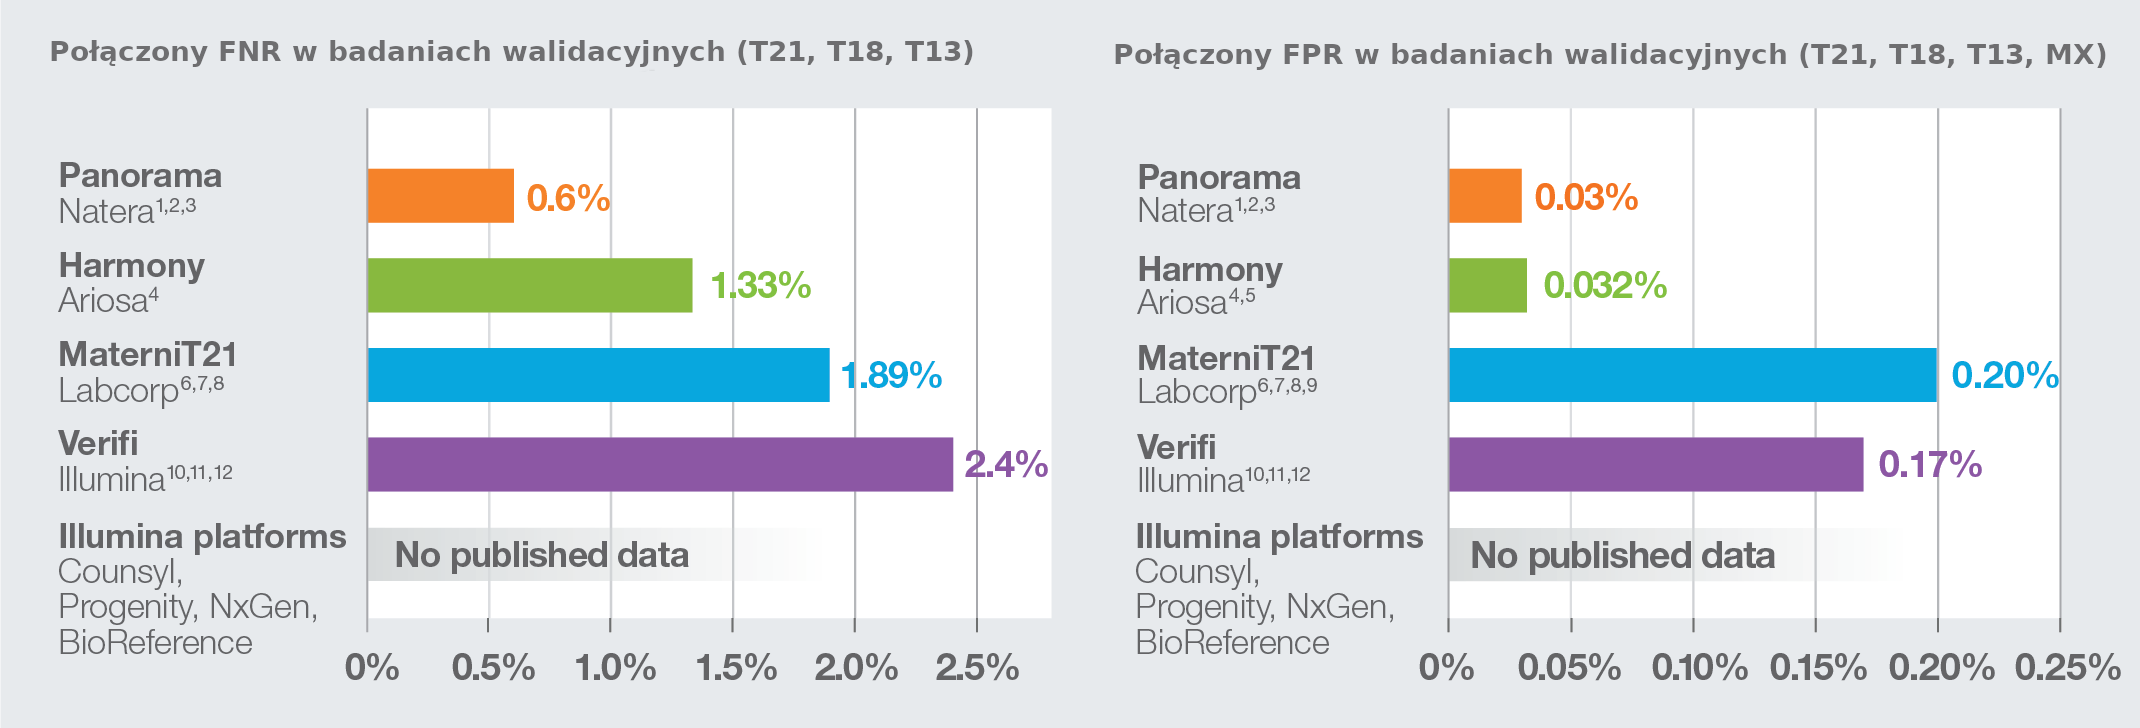 nych (Fpanorama test prenatalny  zmniejsza zarówno współczynniki wyników fałszywie ujemNR), jak i fałszywie dodatnich (FOR) w porównaniu do innych testów prenatalnych